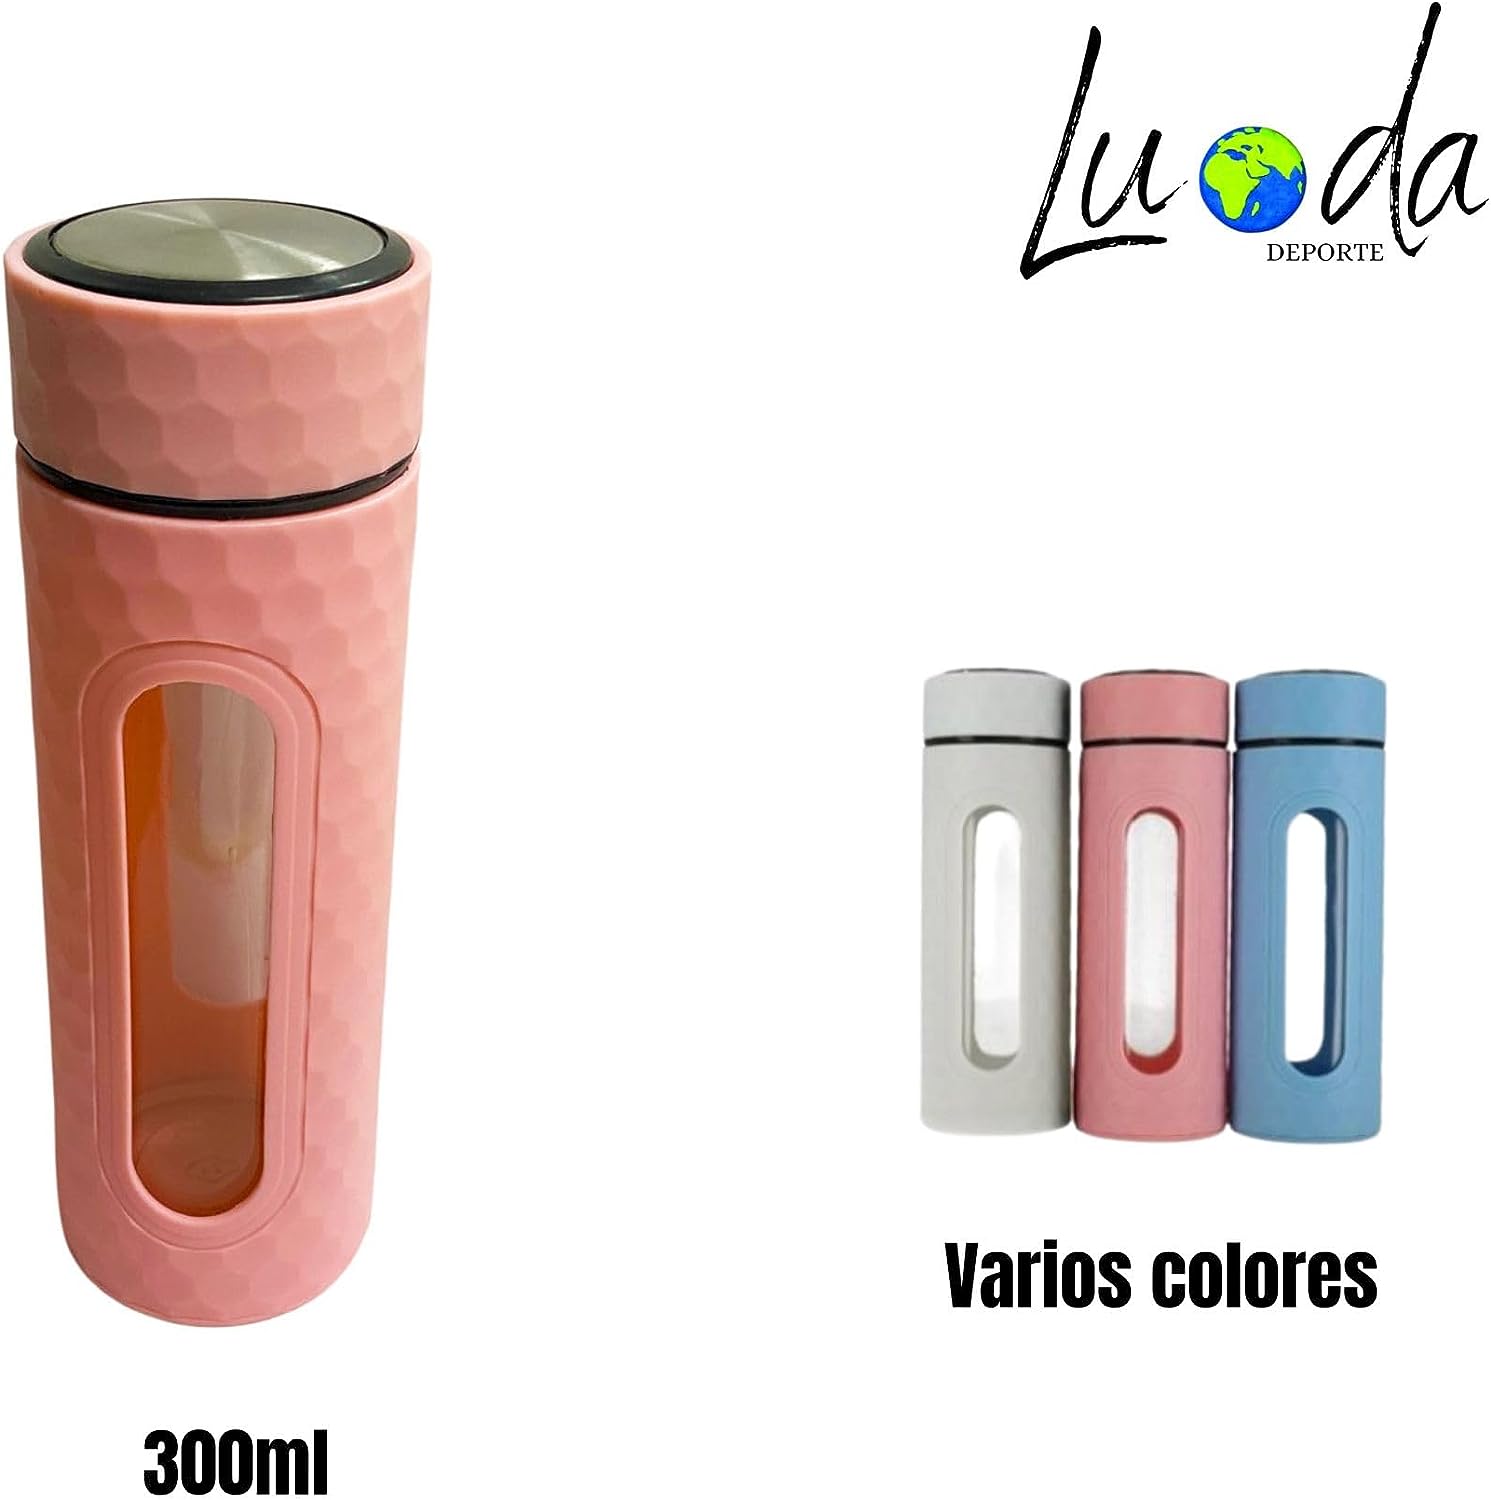 gaiavitae botella de cristal inwater 300ml rosa con diseño innovador accesorio infusiones y recubrimiento en plástico resistente ¡hidrátate con estilo!